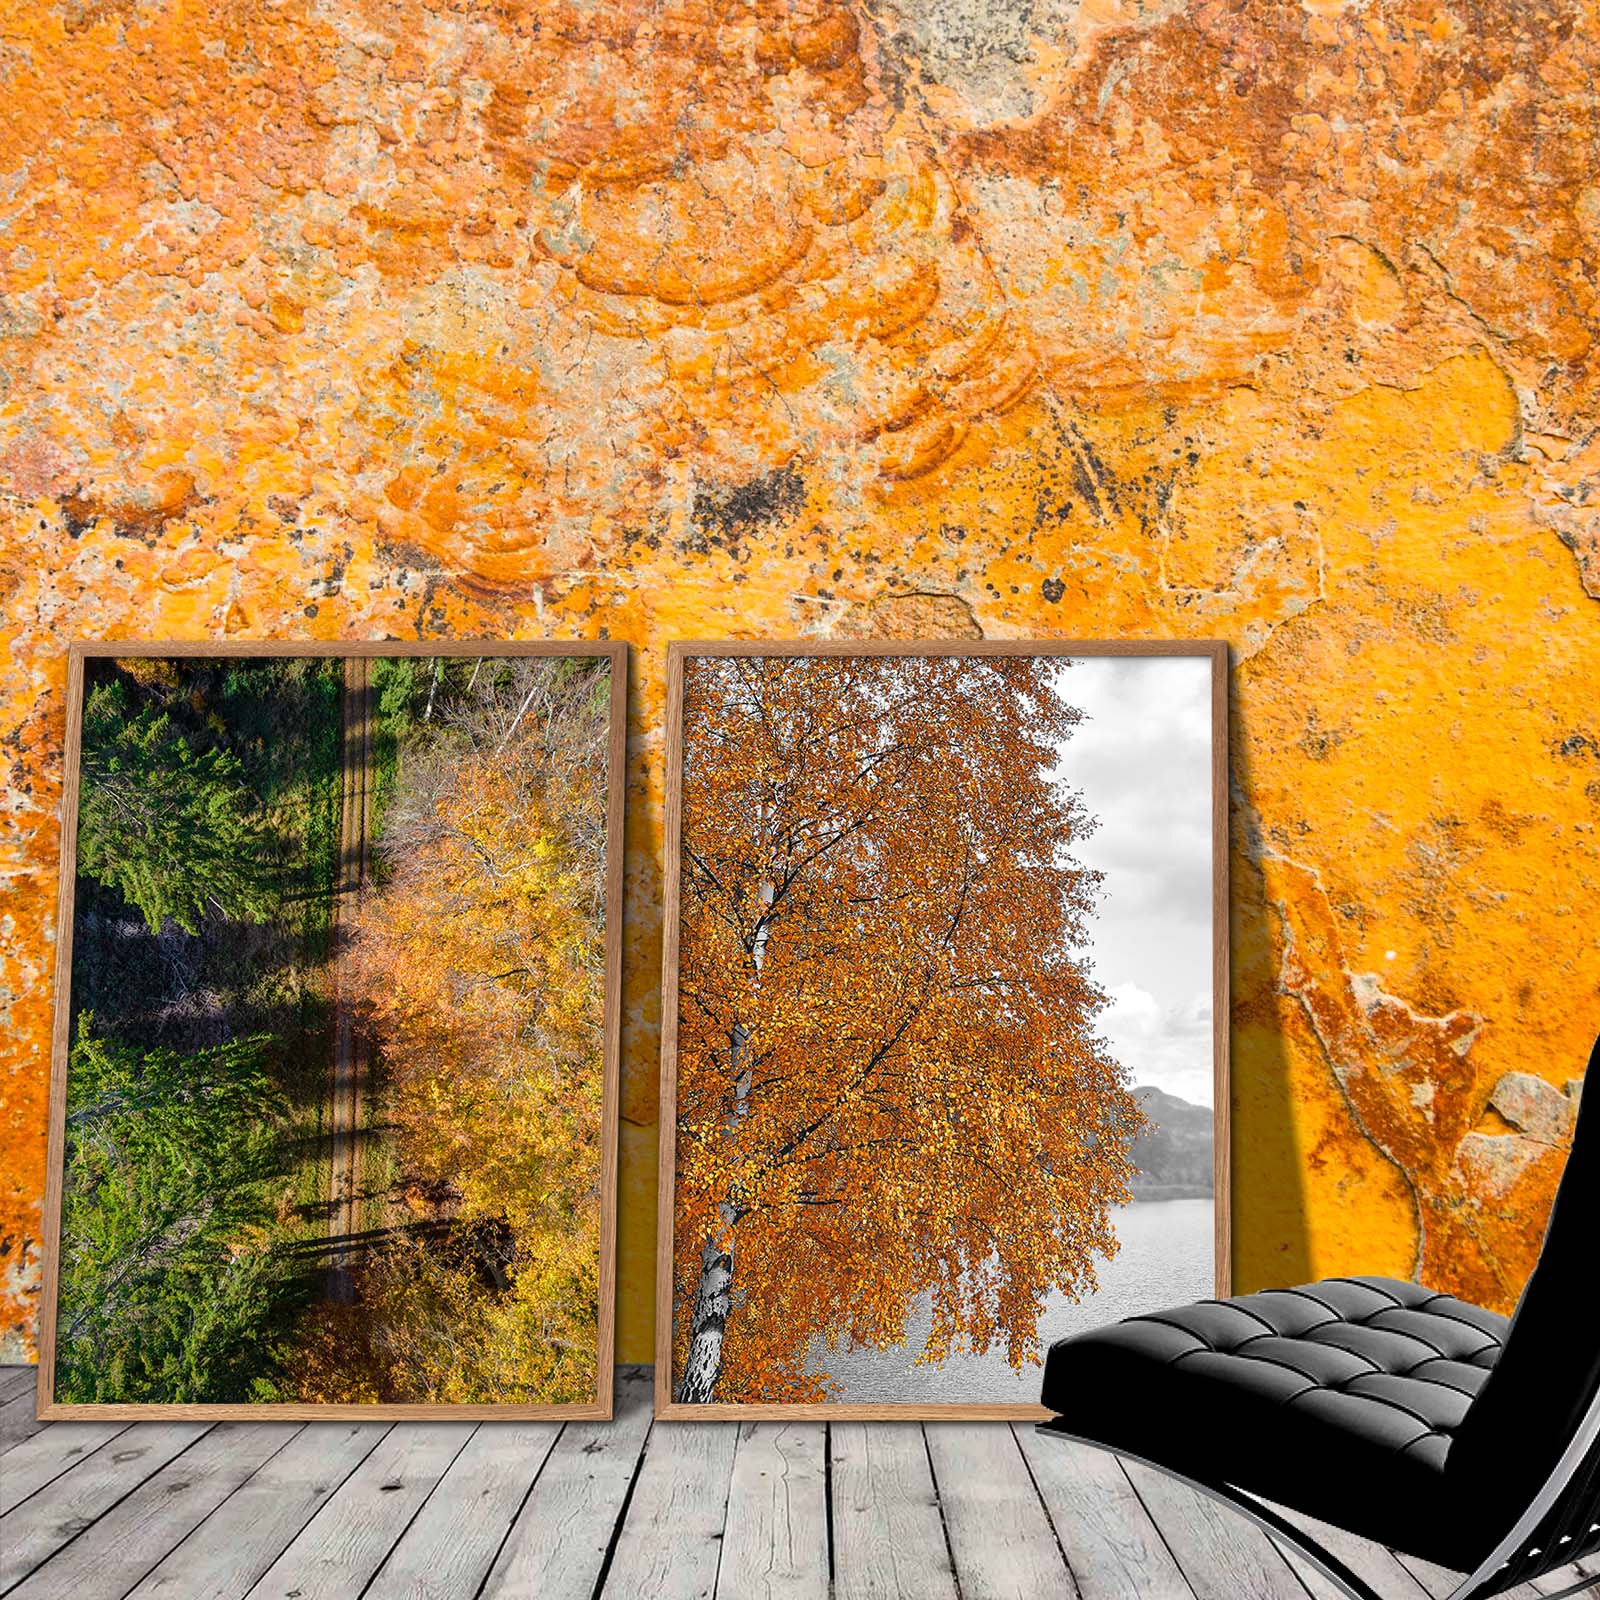 To billeder med orange efterårsblade der står op af en gul væg